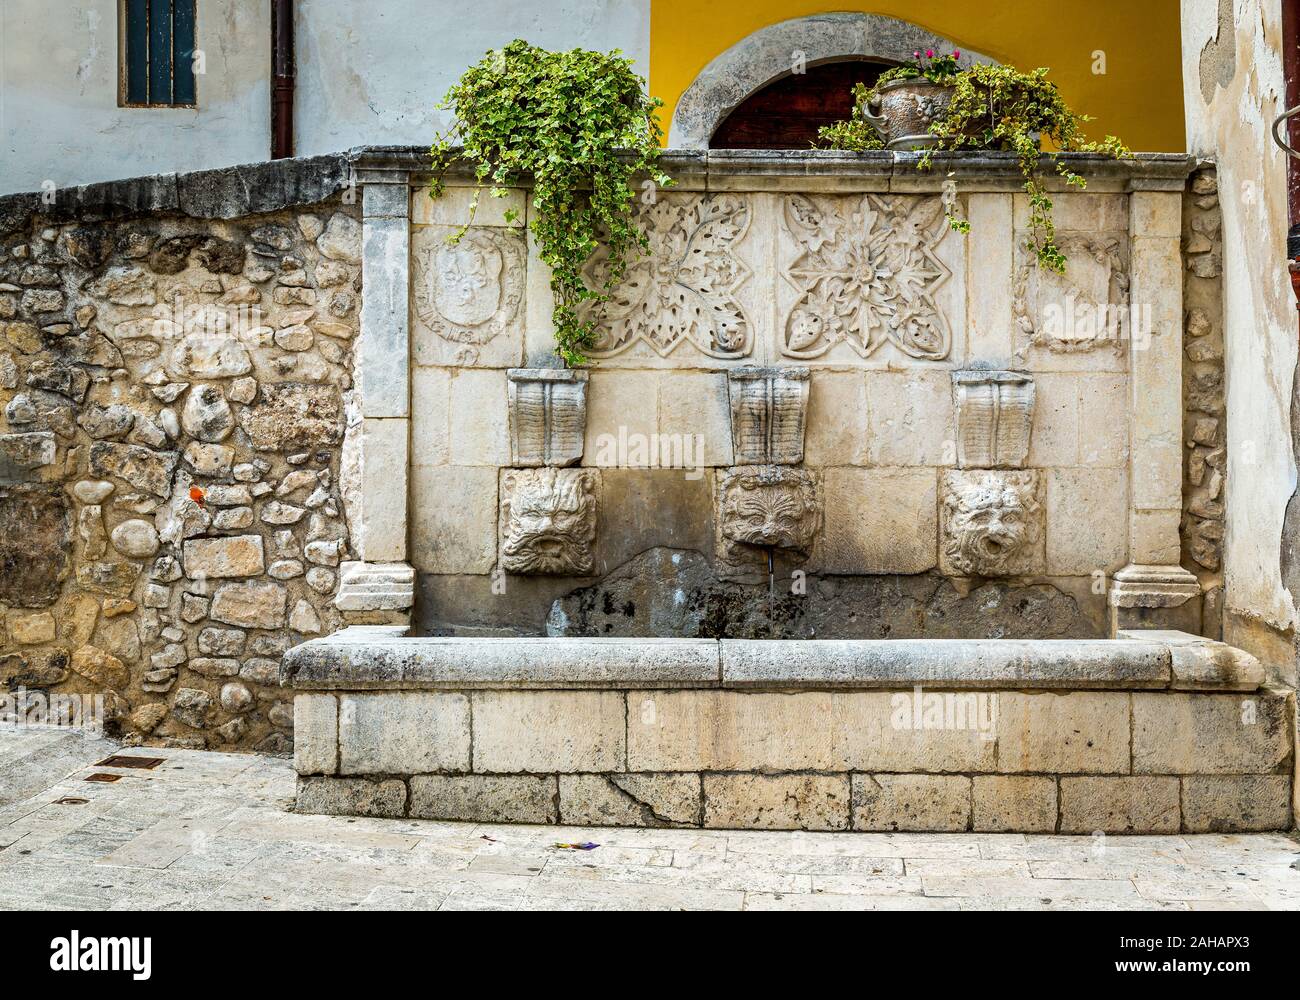 Fontana medievale con tre maschere e decorazioni scolpite, Sulmona Foto Stock